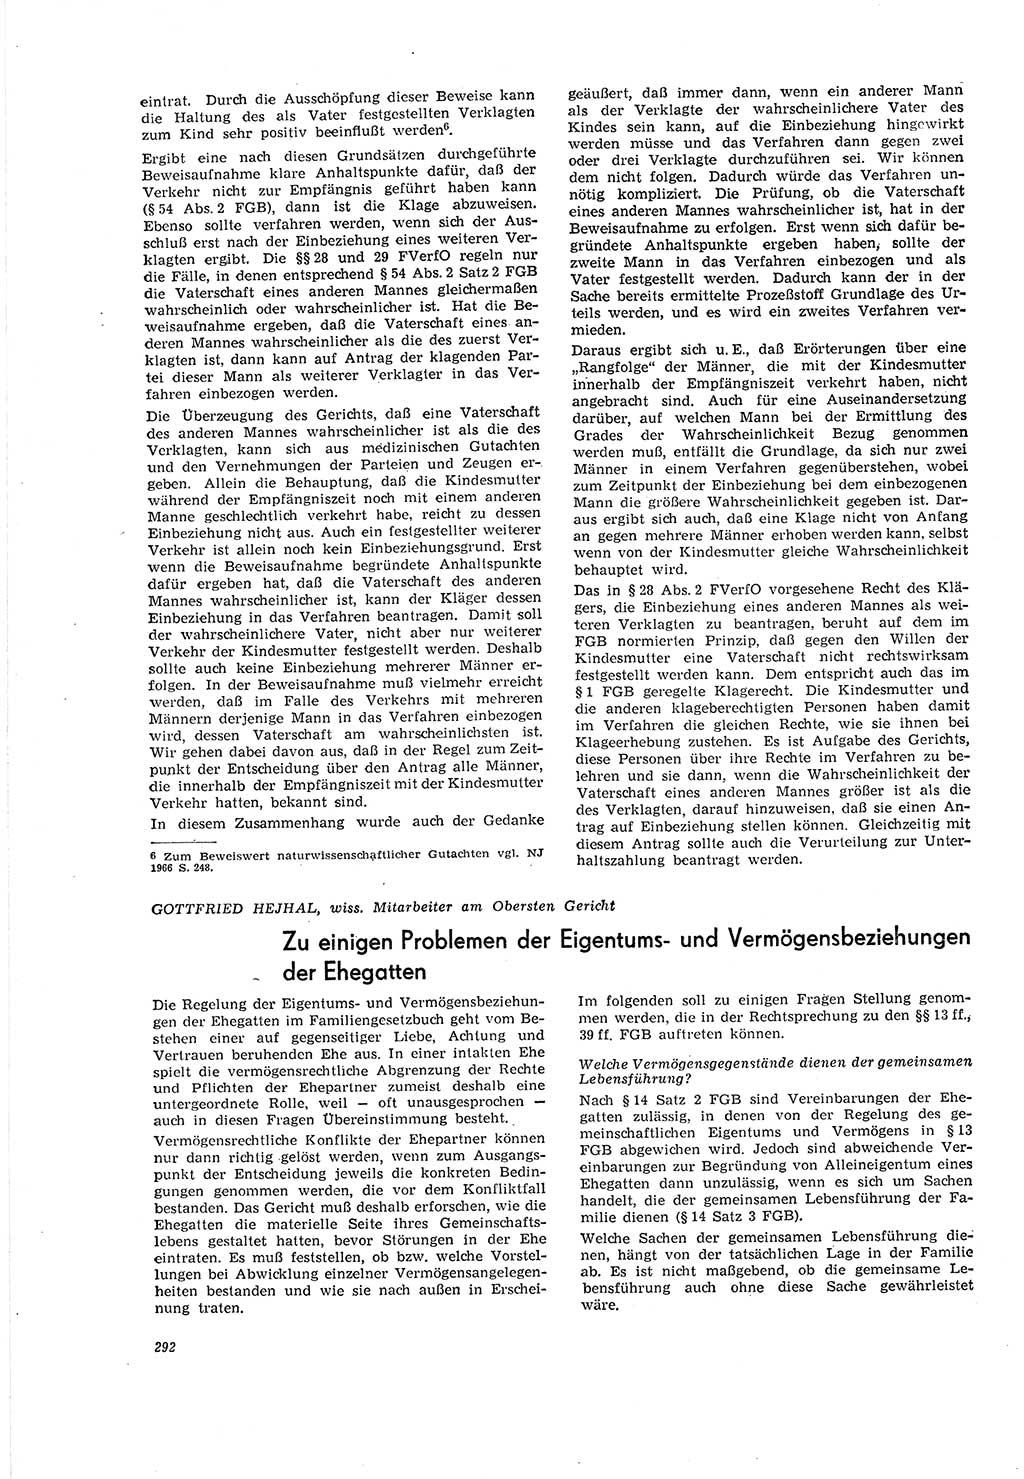 Neue Justiz (NJ), Zeitschrift für Recht und Rechtswissenschaft [Deutsche Demokratische Republik (DDR)], 20. Jahrgang 1966, Seite 292 (NJ DDR 1966, S. 292)